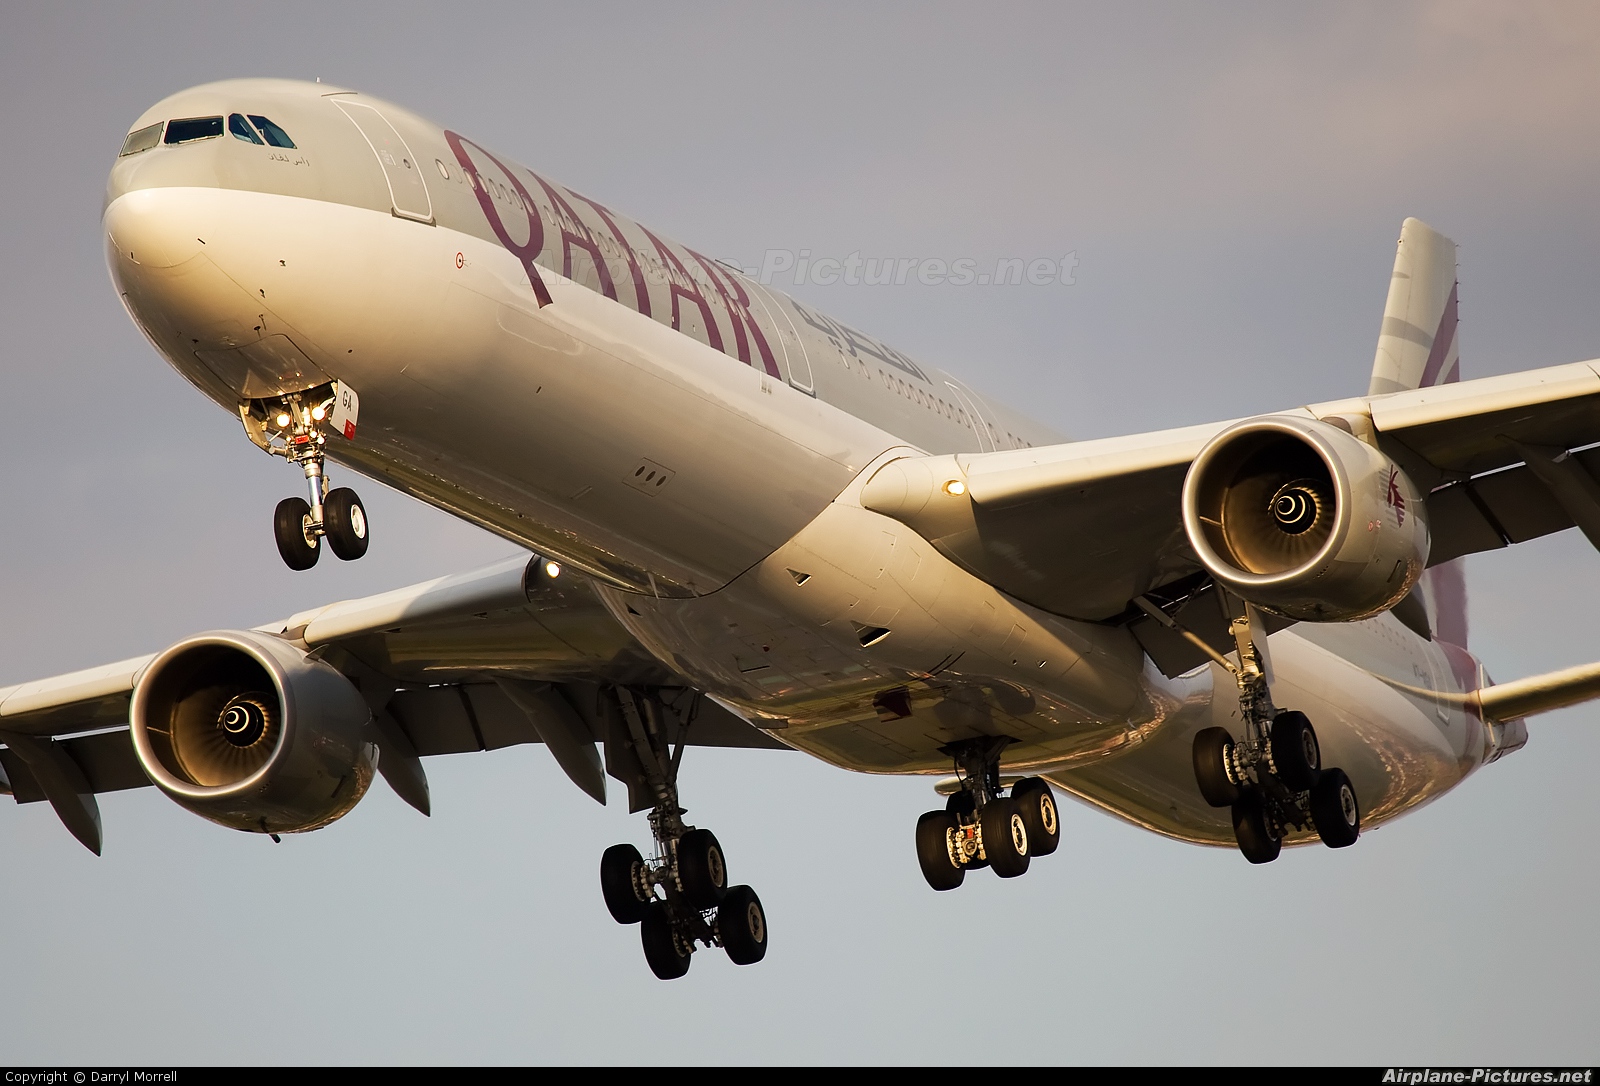 Qatar Airways A7-AGA aircraft at London - Heathrow